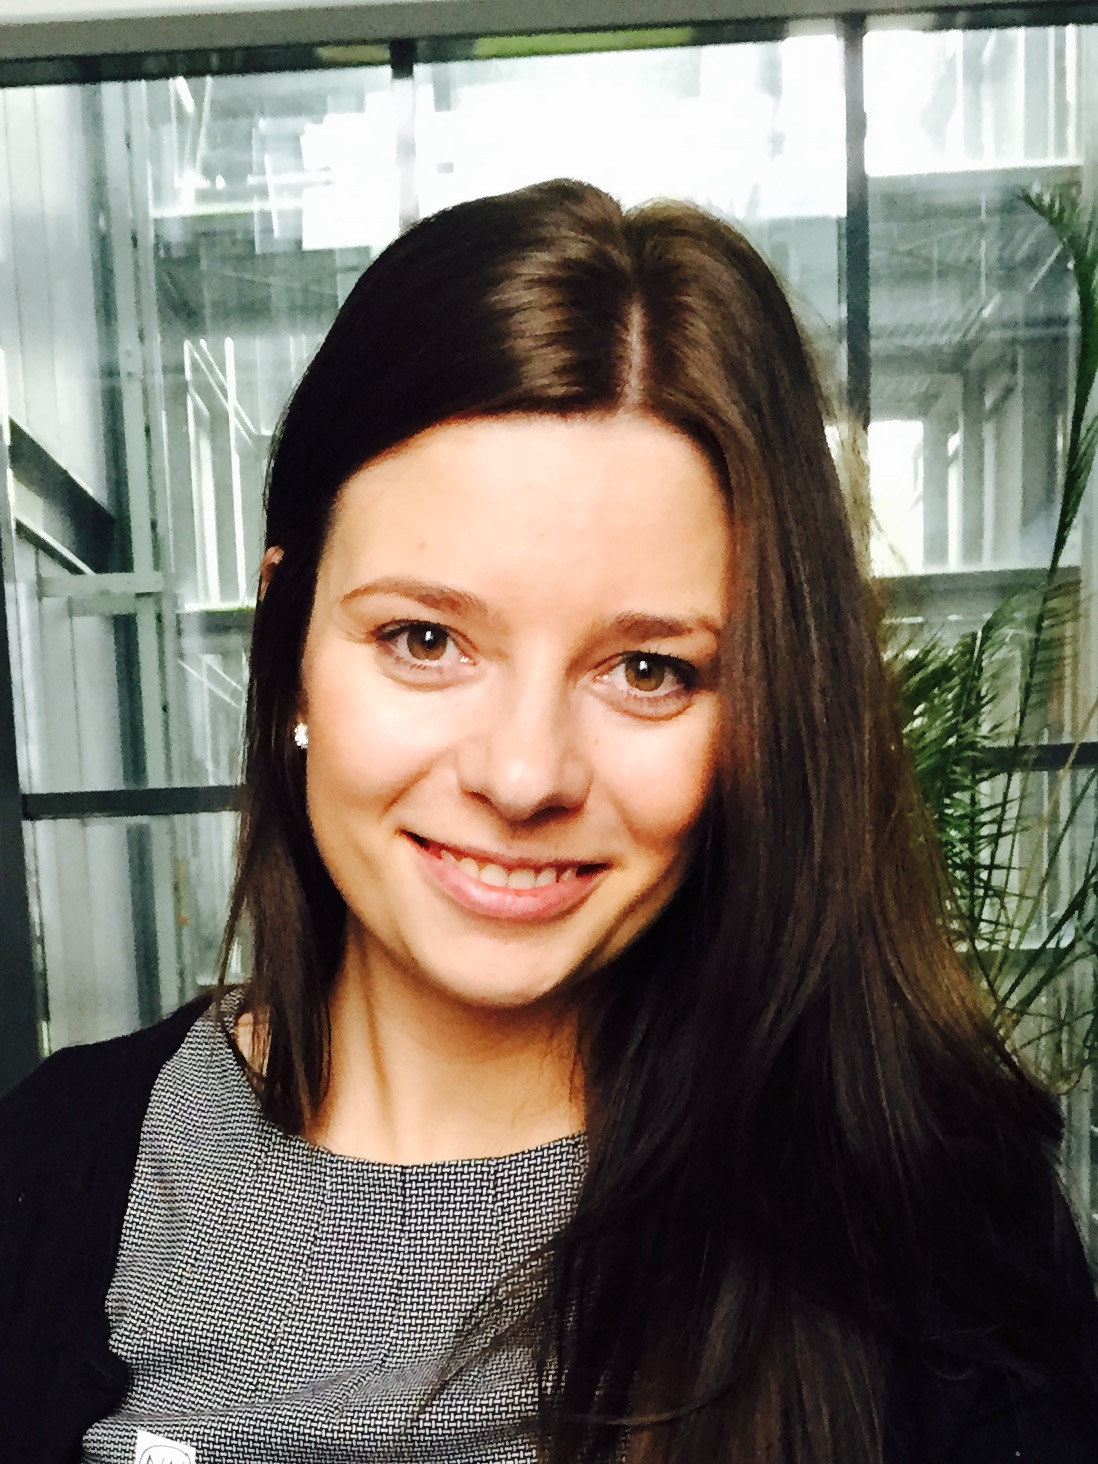 Justyna Olas-Apelt – IGZ Employee